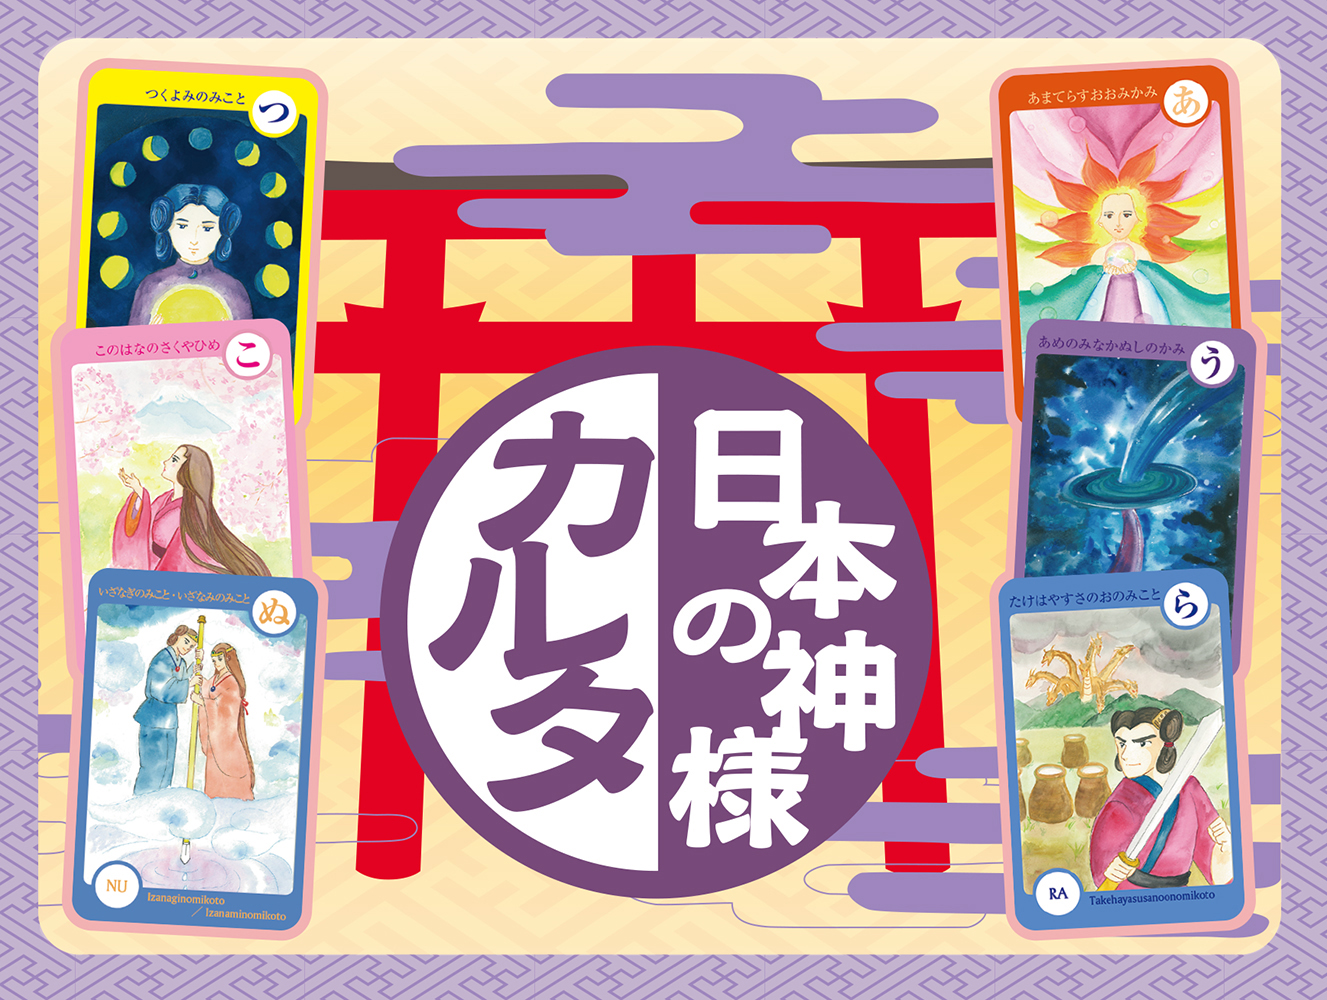 日本の神様カルタ 日本のオラクルカード タロットカード全集オンラインストア